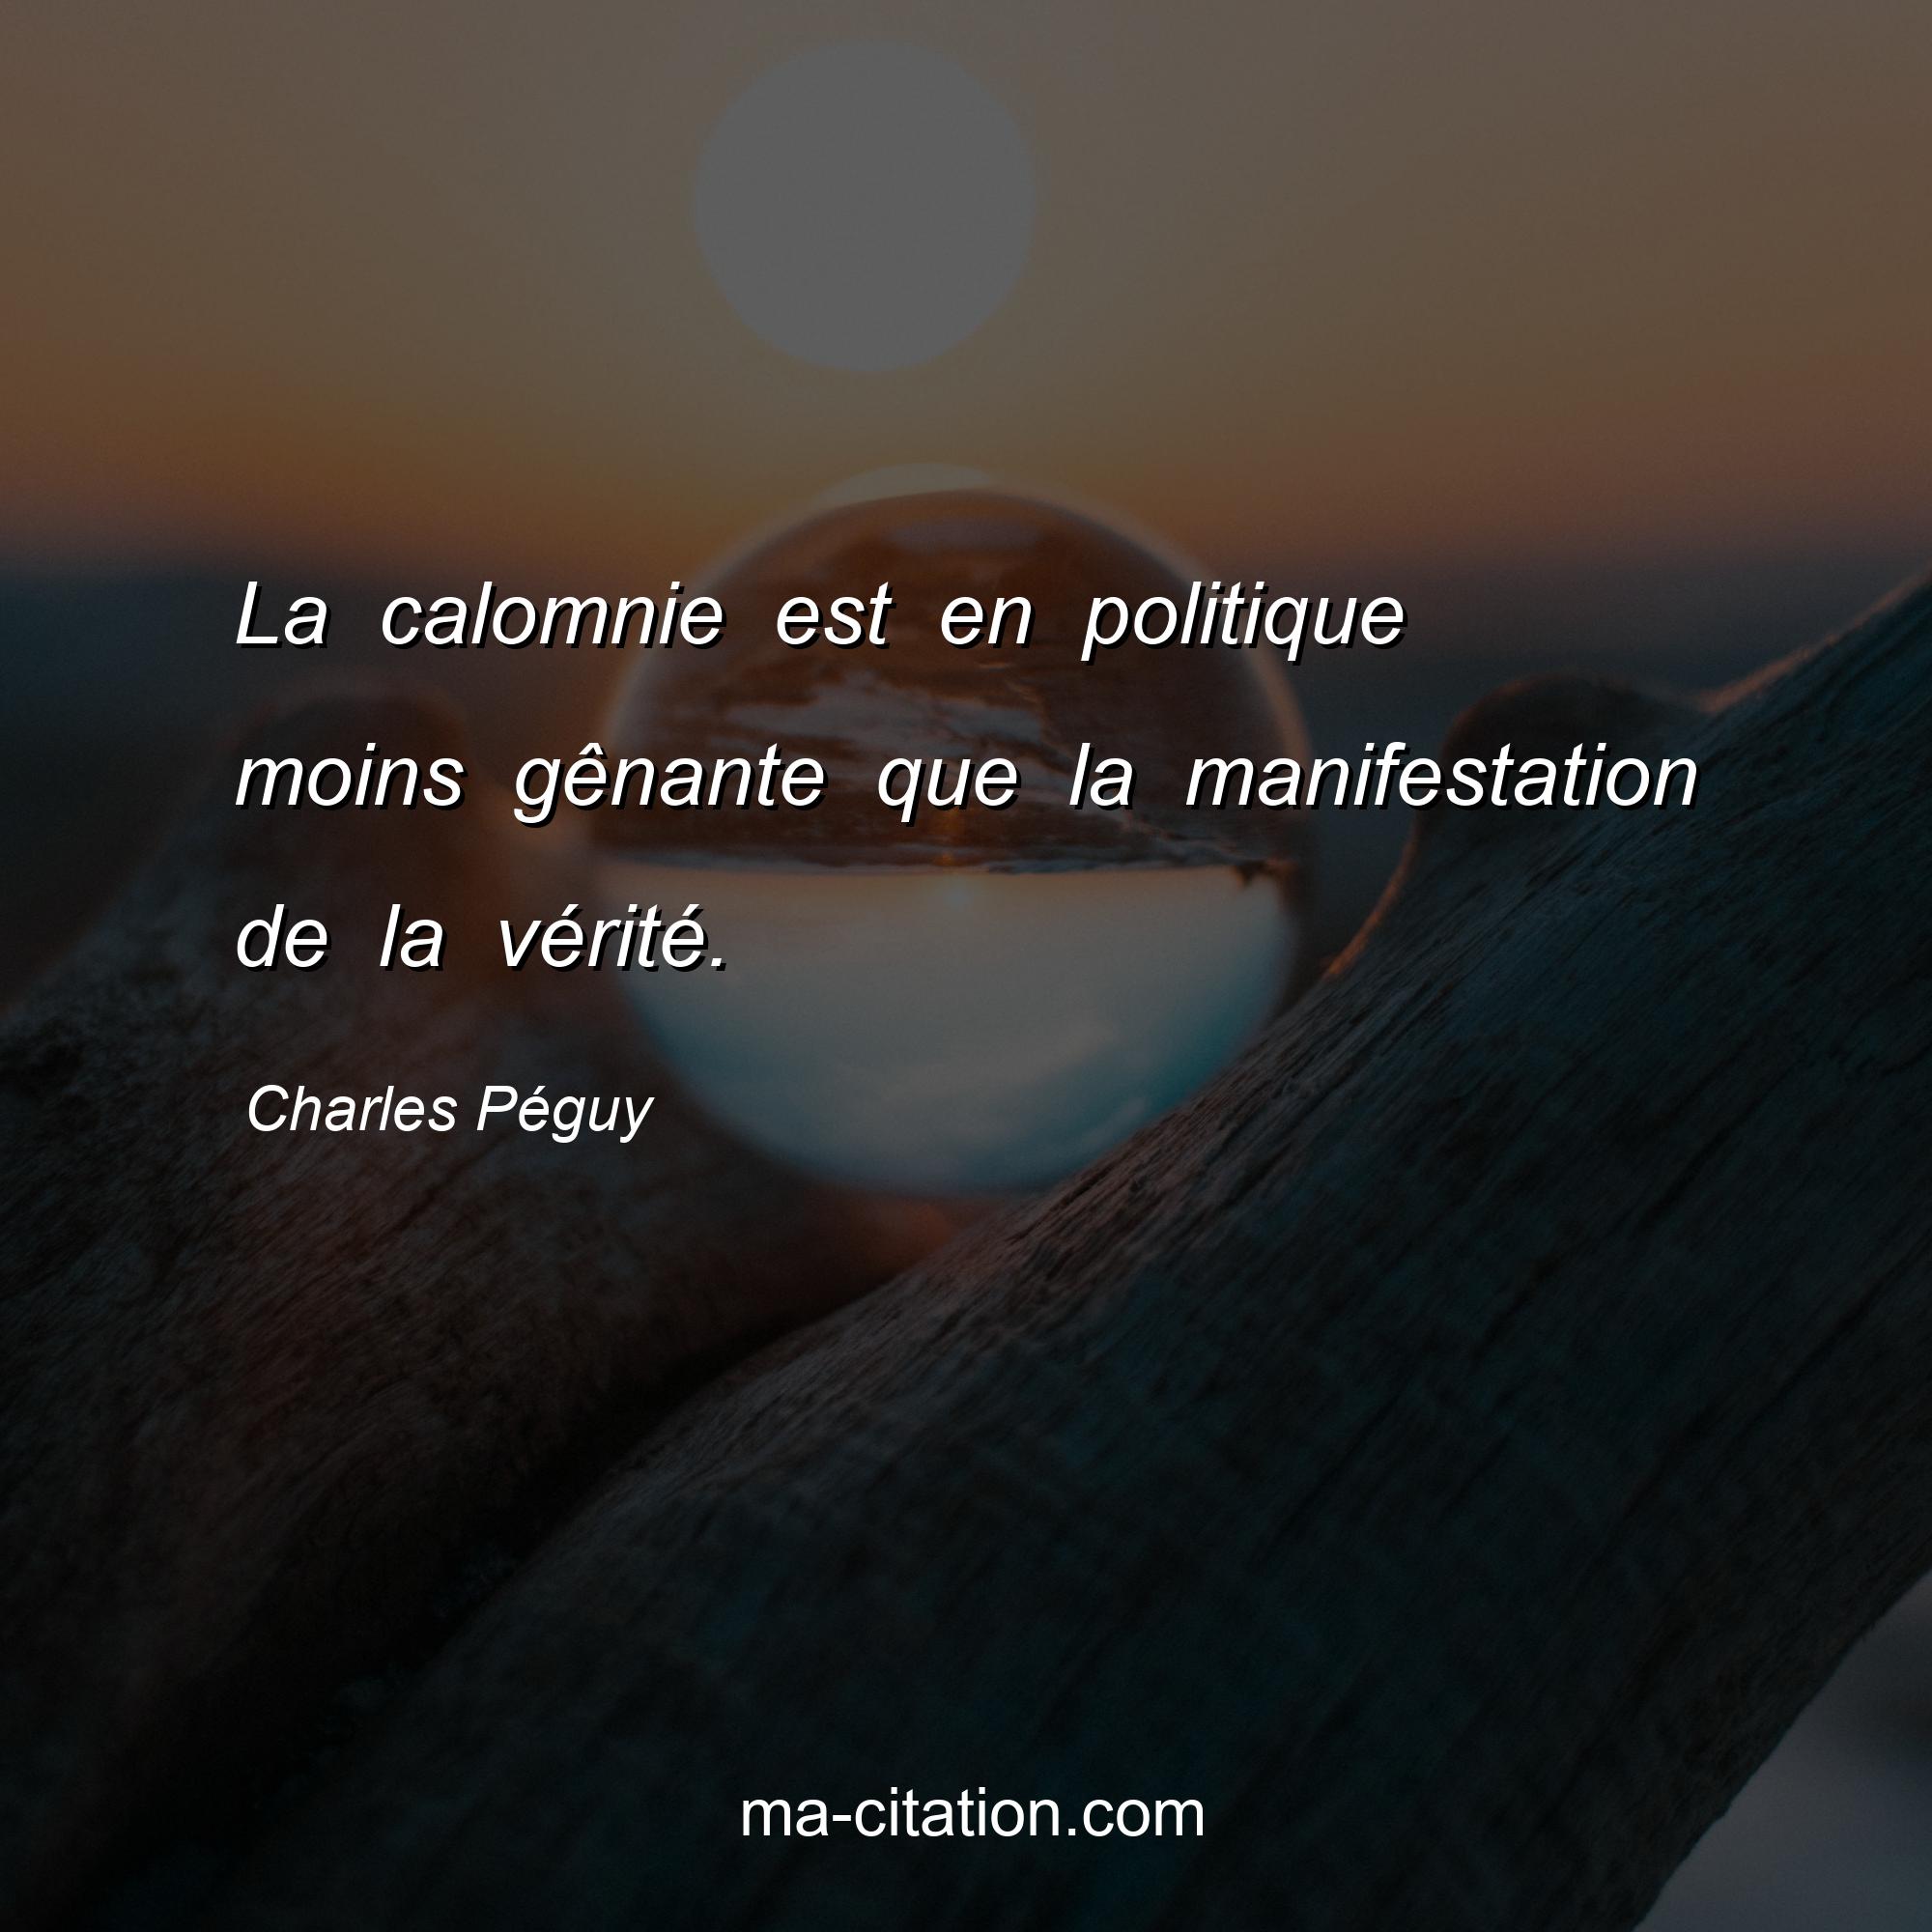 Charles Péguy : La calomnie est en politique moins gênante que la manifestation de la vérité.